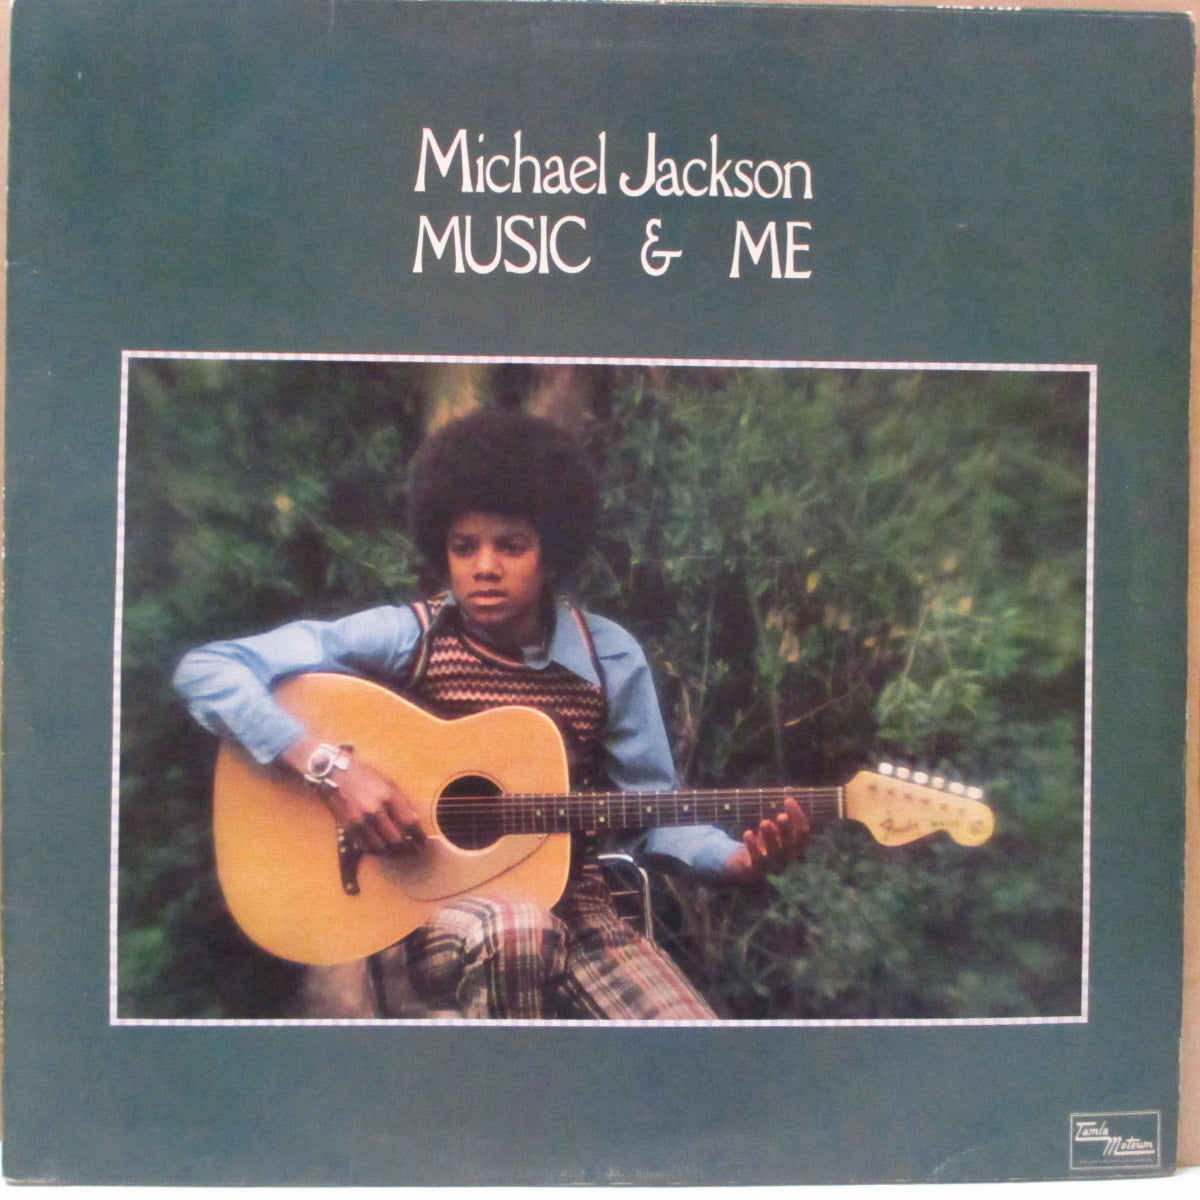 MICHAEL JACKSON (マイケル・ジャクソン) - Music u0026 Me (UK オリジナル LP/絹目ジャケ)